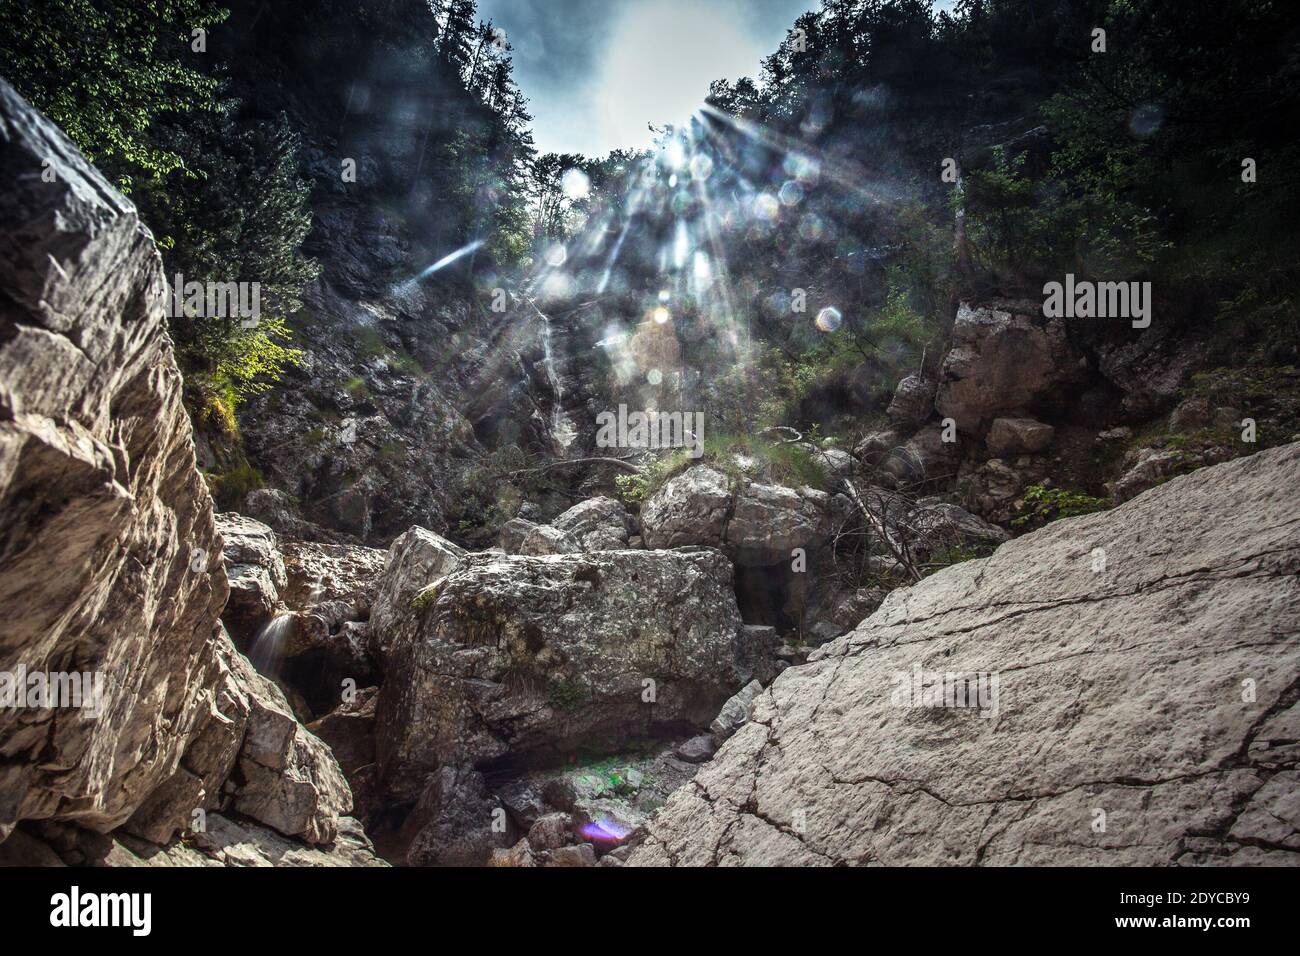 Gorge rocheuse remplie de gros rochers à la surface de laquelle il y a une empreinte de dinosaure, Monte Resettum, Friuli, Italie. Prise de vue à la lumière Banque D'Images